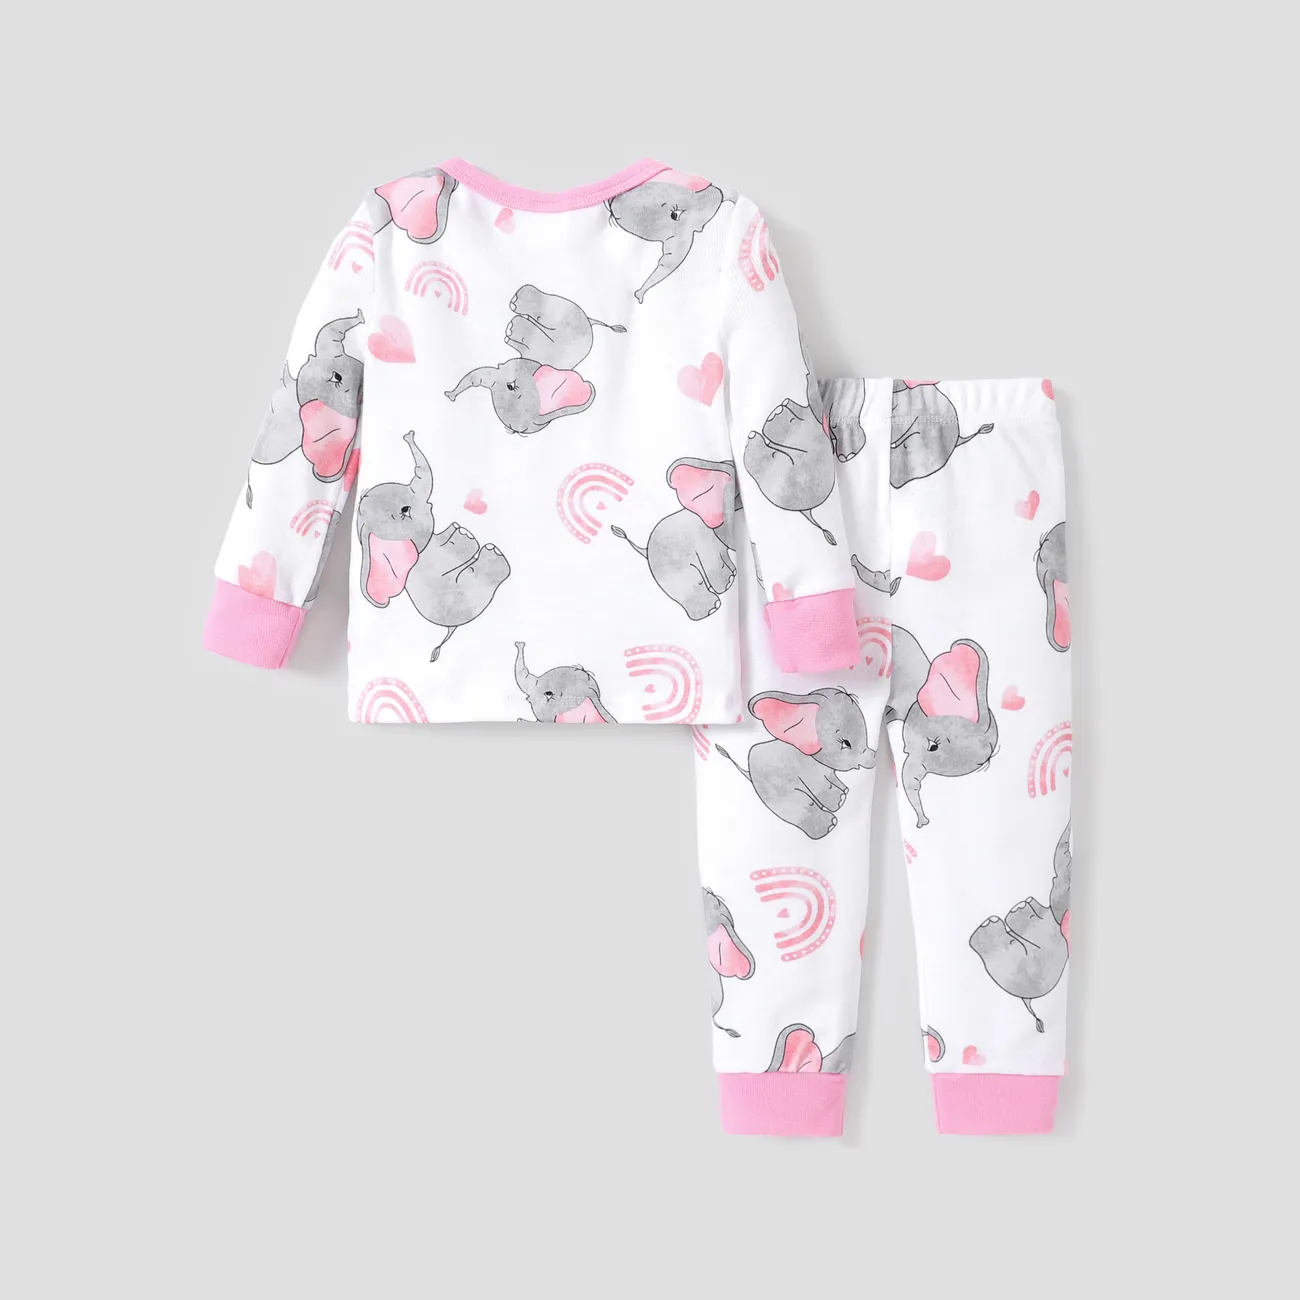 Pyjama en coton unisexe ajusté, ensemble de 2 pièces - Style basique pour enfants. Rose big image 1